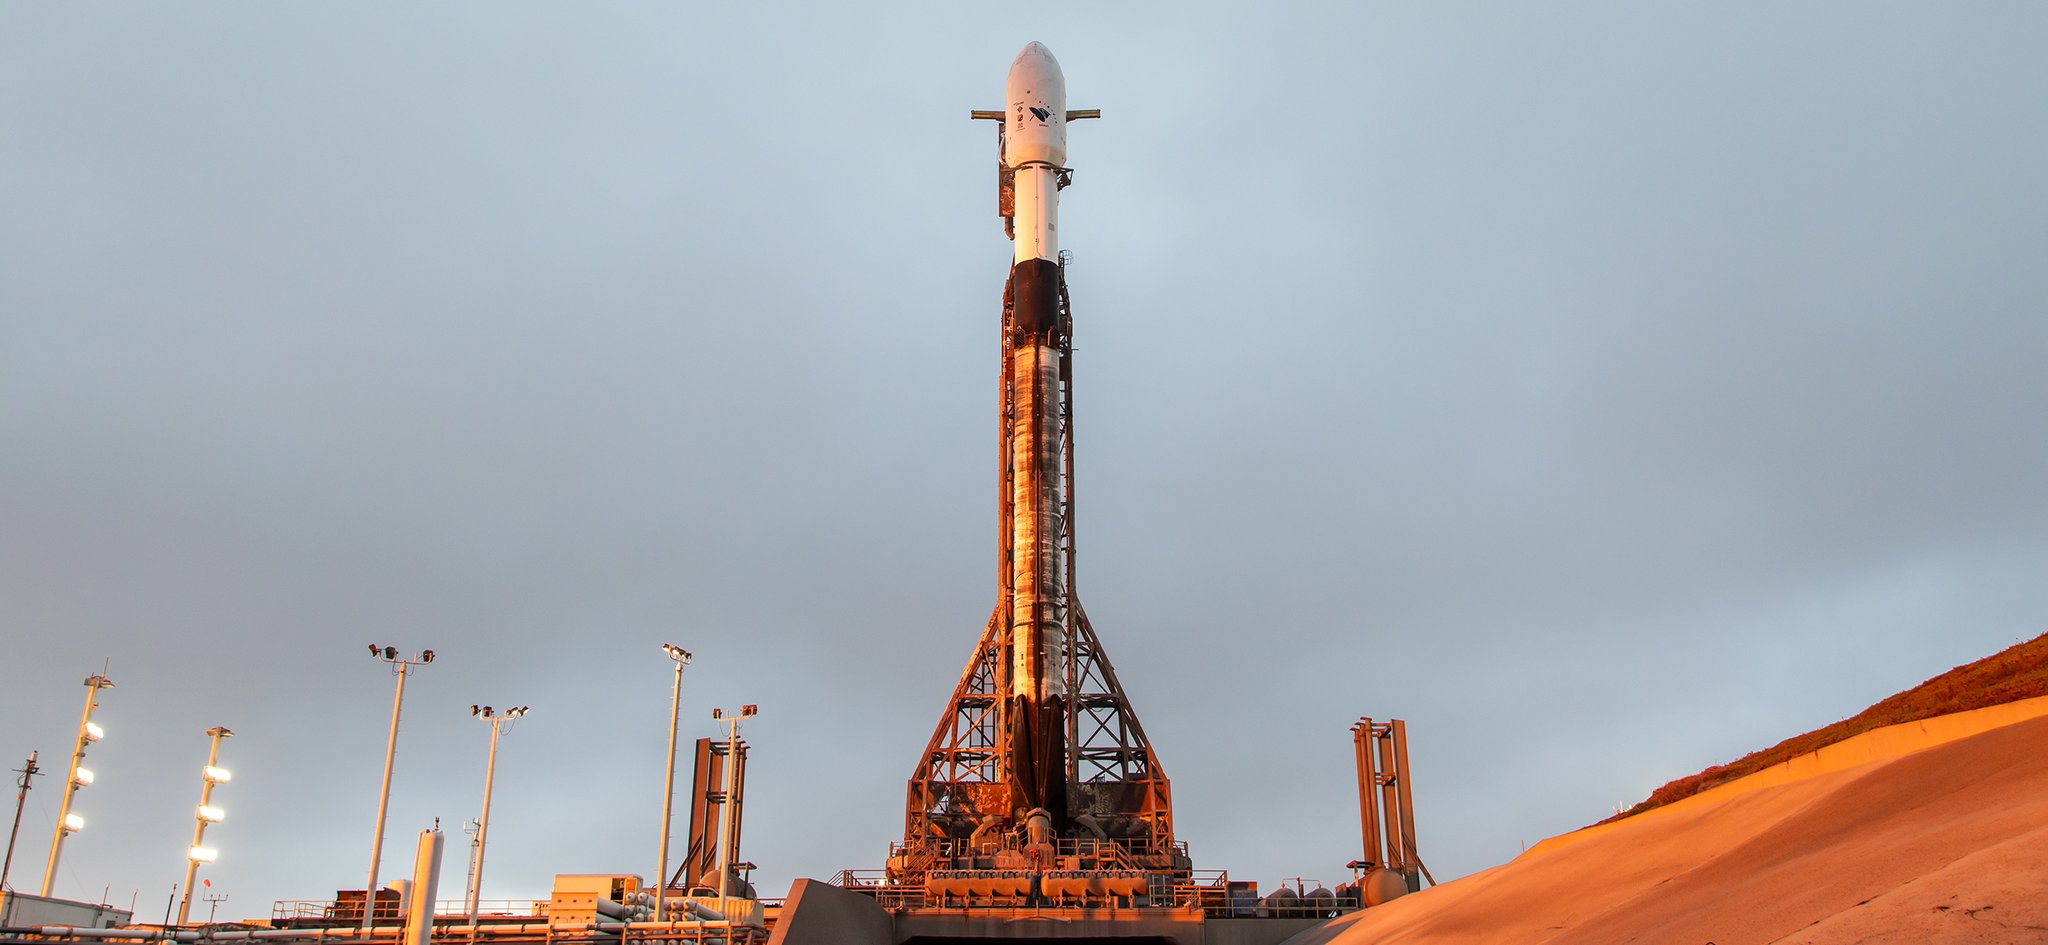 Die beiden letzten Satelliten des Aufklärungssystems SARah der Bundeswehr startbereit in der Transportkapsel der Falcon 9 Trägerrakete von SpaceX.